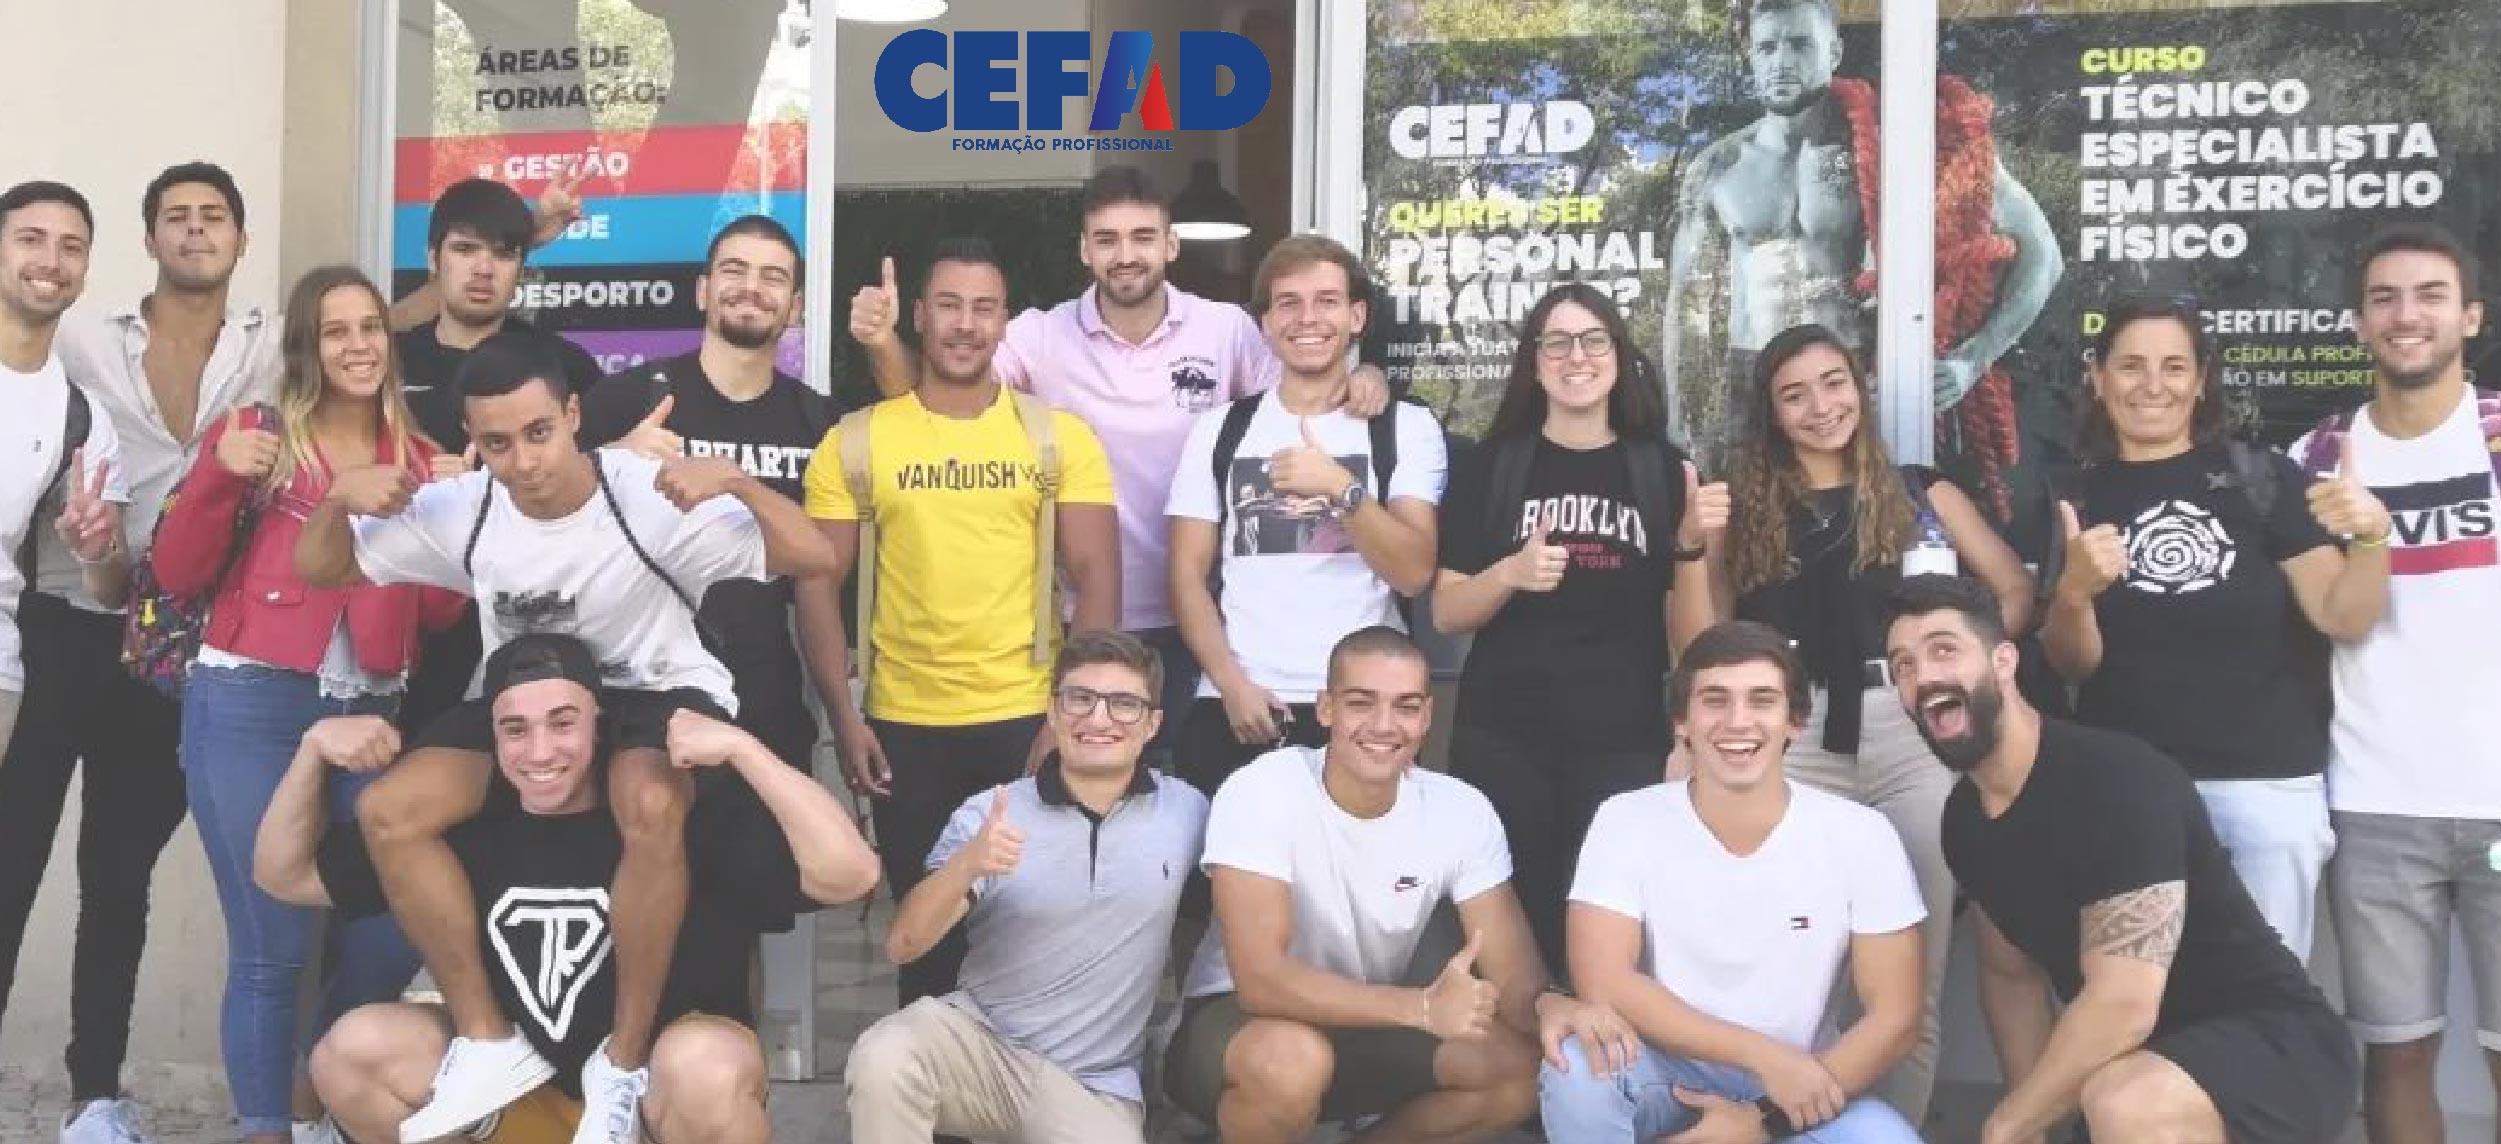 CEFAD centro formação cursos photo